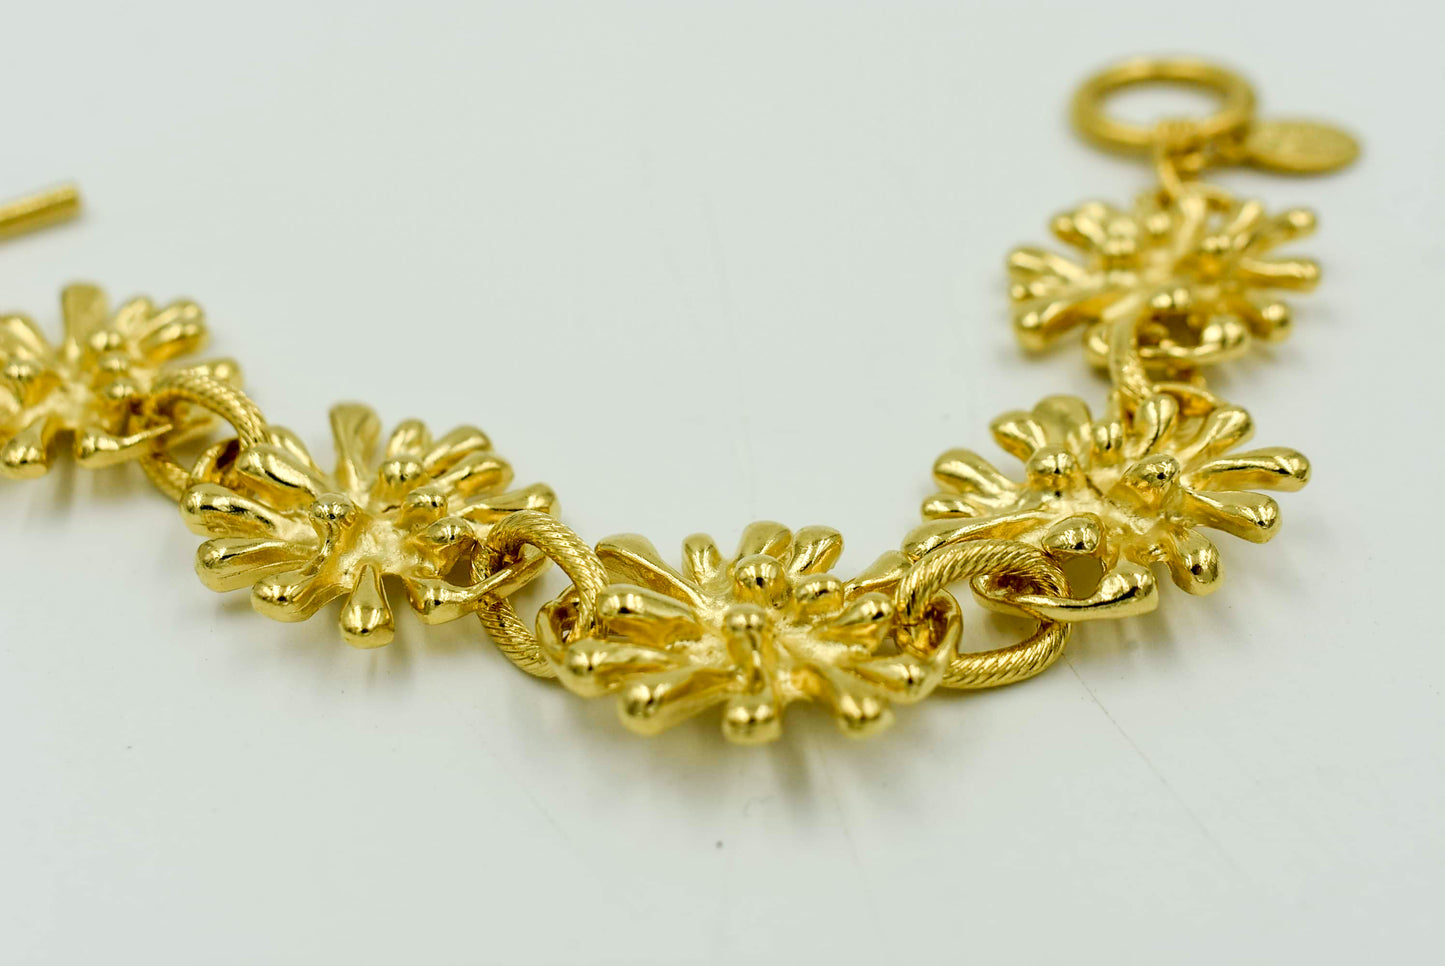 Handcast Gold Sunburst Bracelet